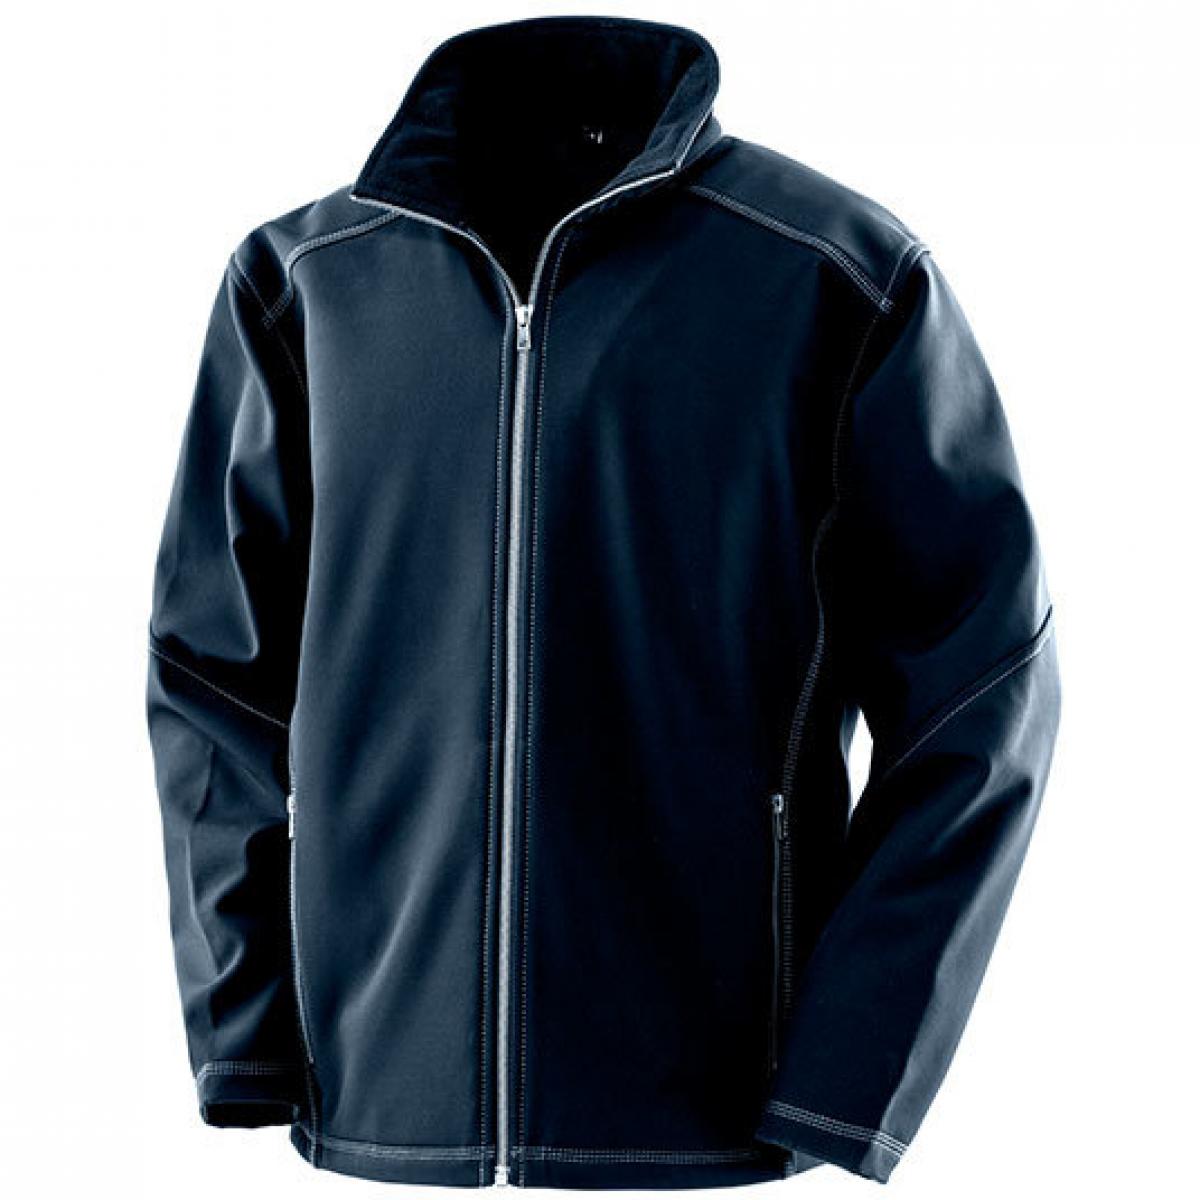 Hersteller: Result WORK-GUARD Herstellernummer: R455M Artikelbezeichnung: Herren Treble Stitch Softshell Jacket Farbe: Navy